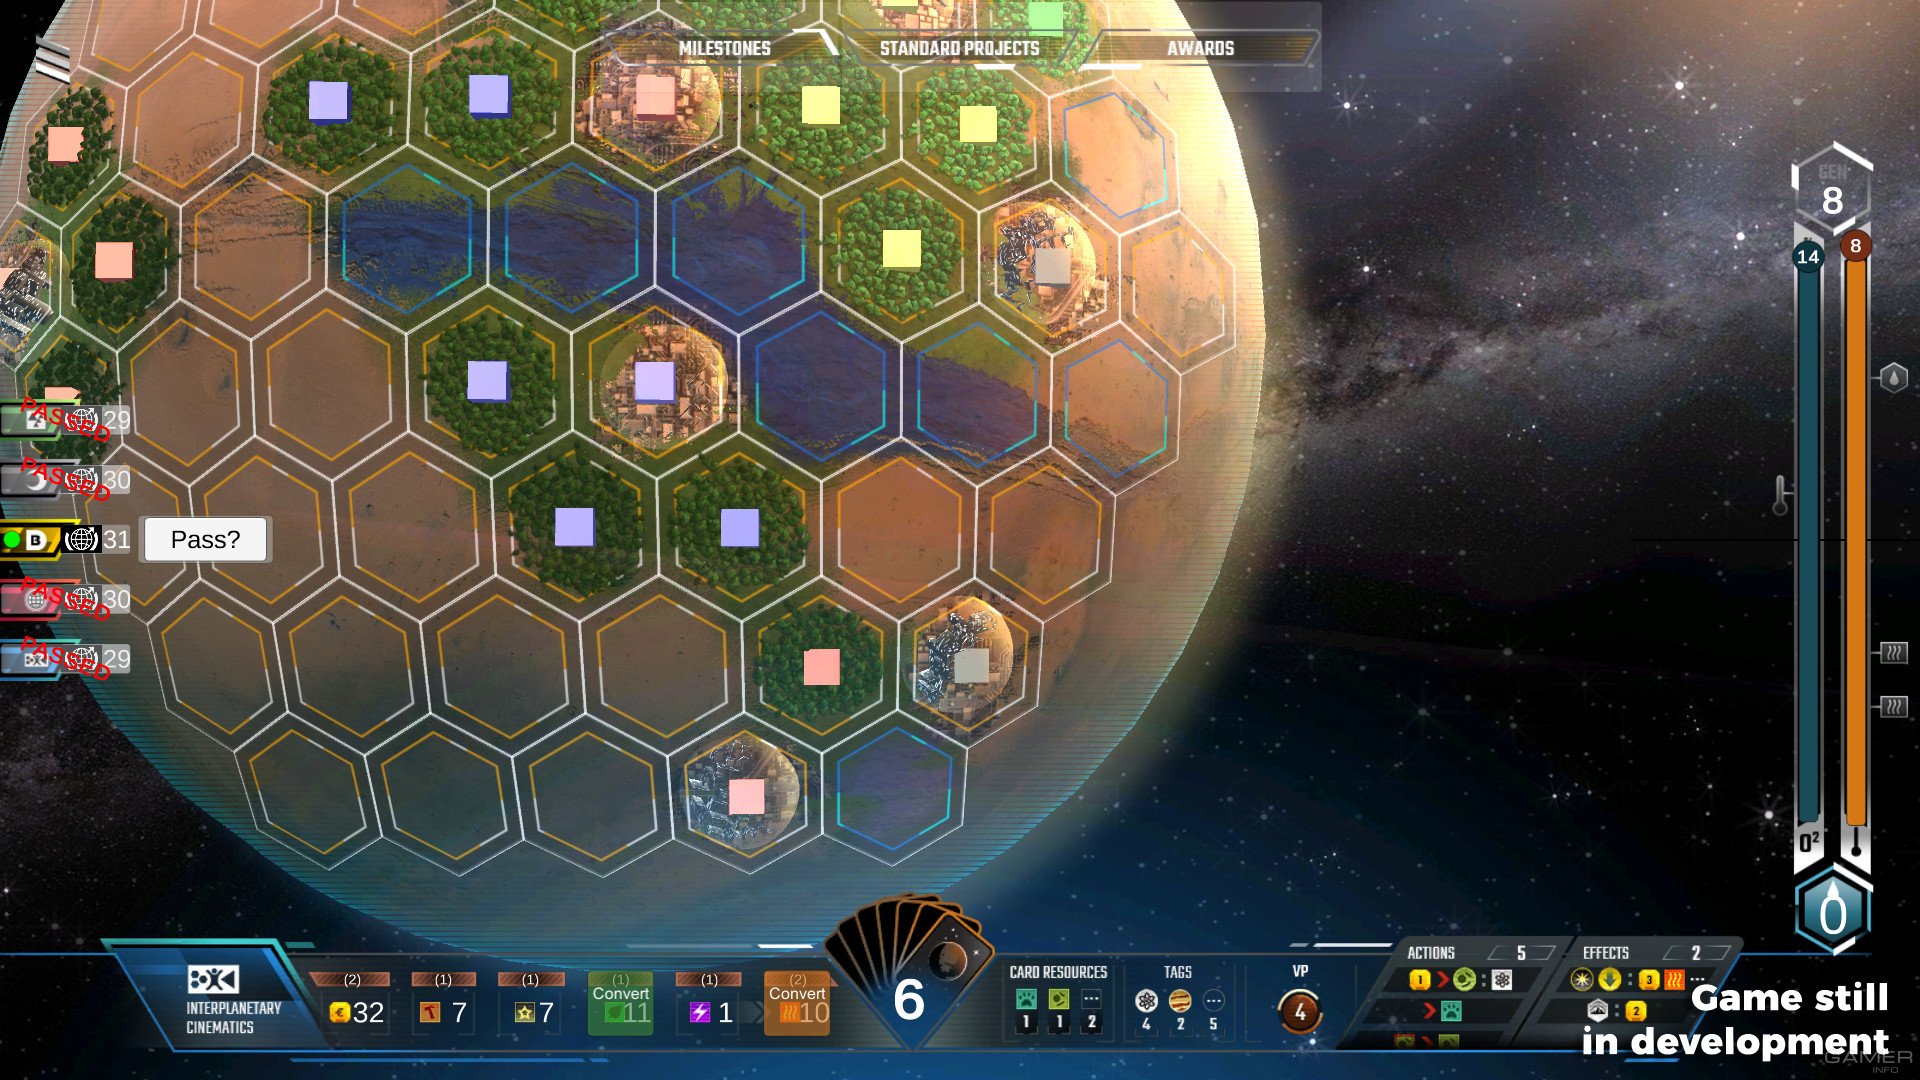 Игра терраформирование планет. Игра про Терраформирование. Игра про Терраформирование планеты. Terraforming Mars Скриншоты. Игры про Терраформинг планет.